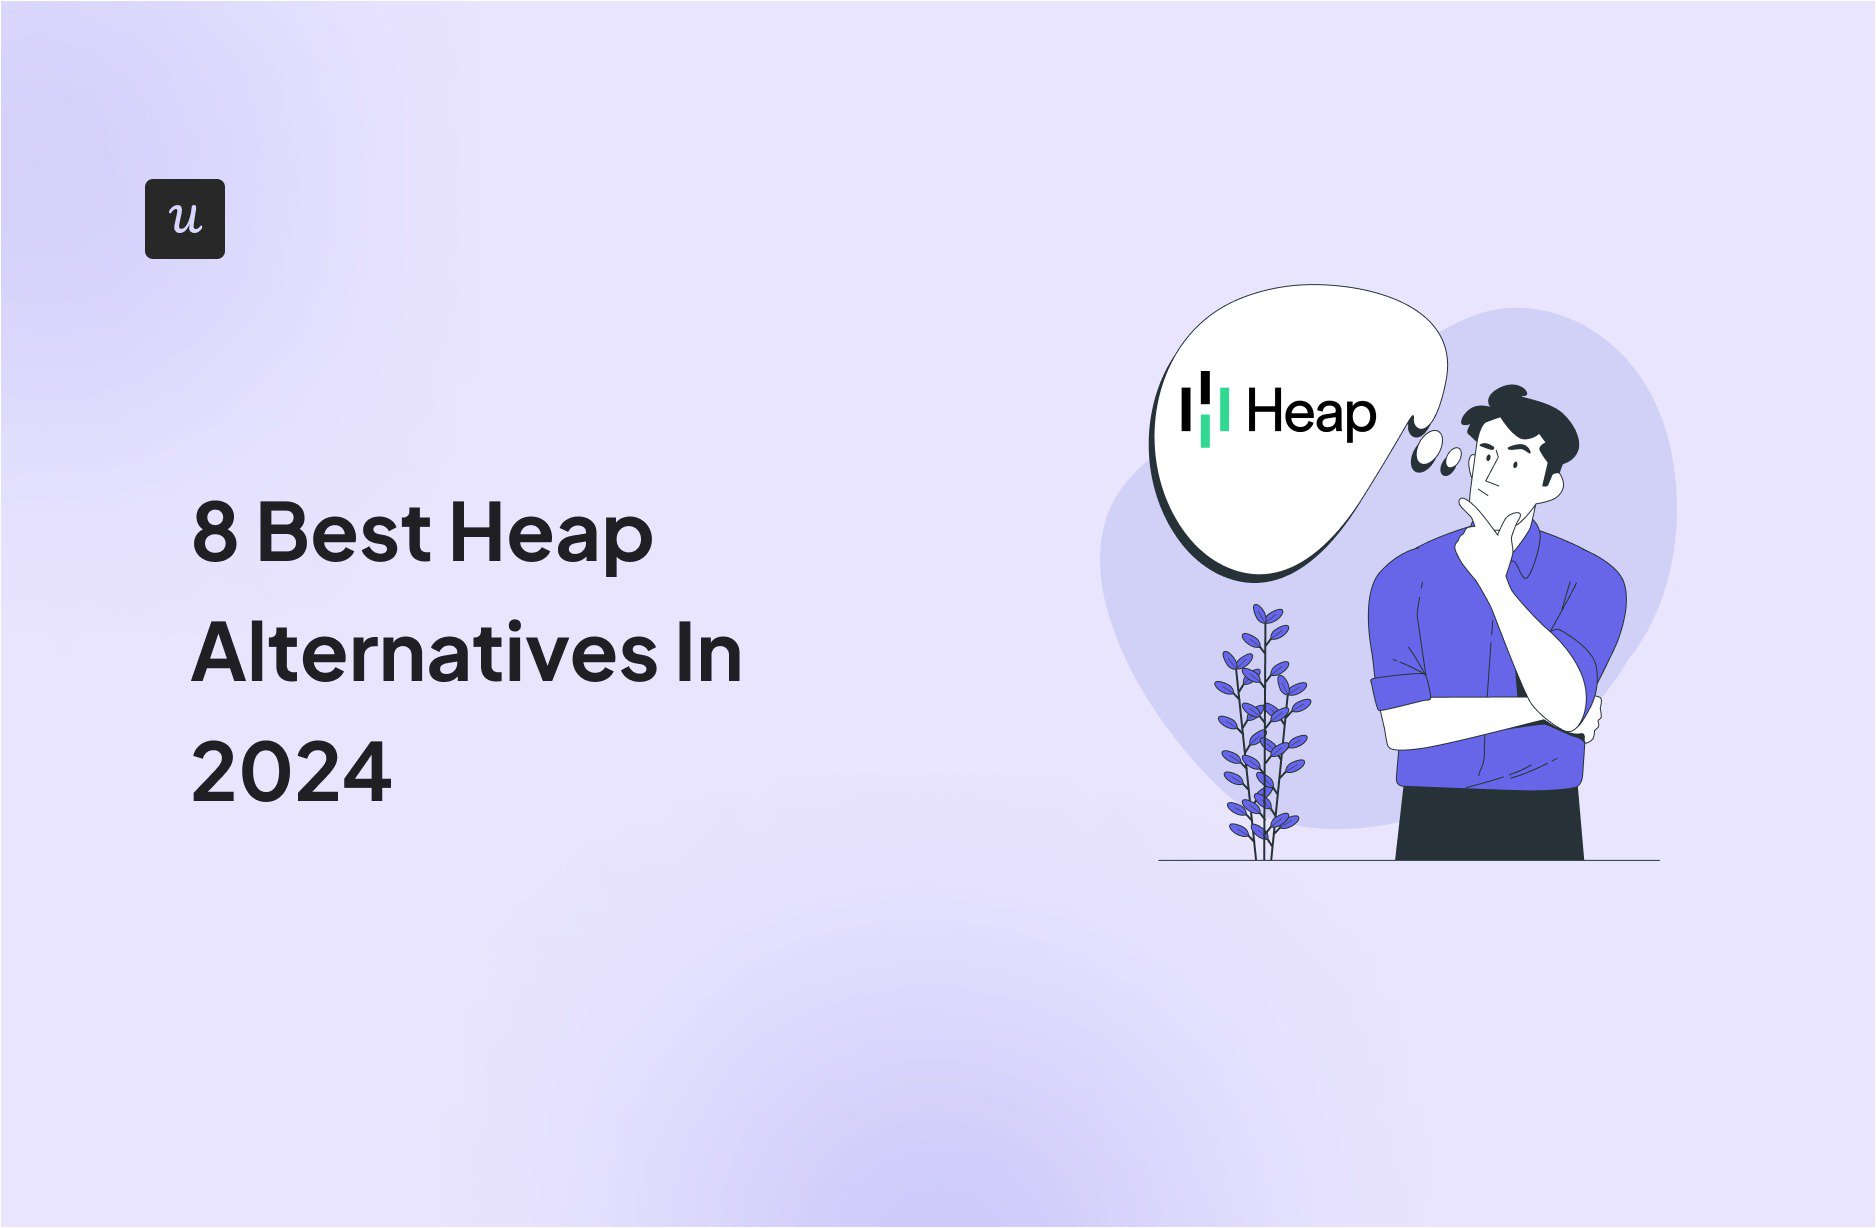 8 best heap alternatives in 2024